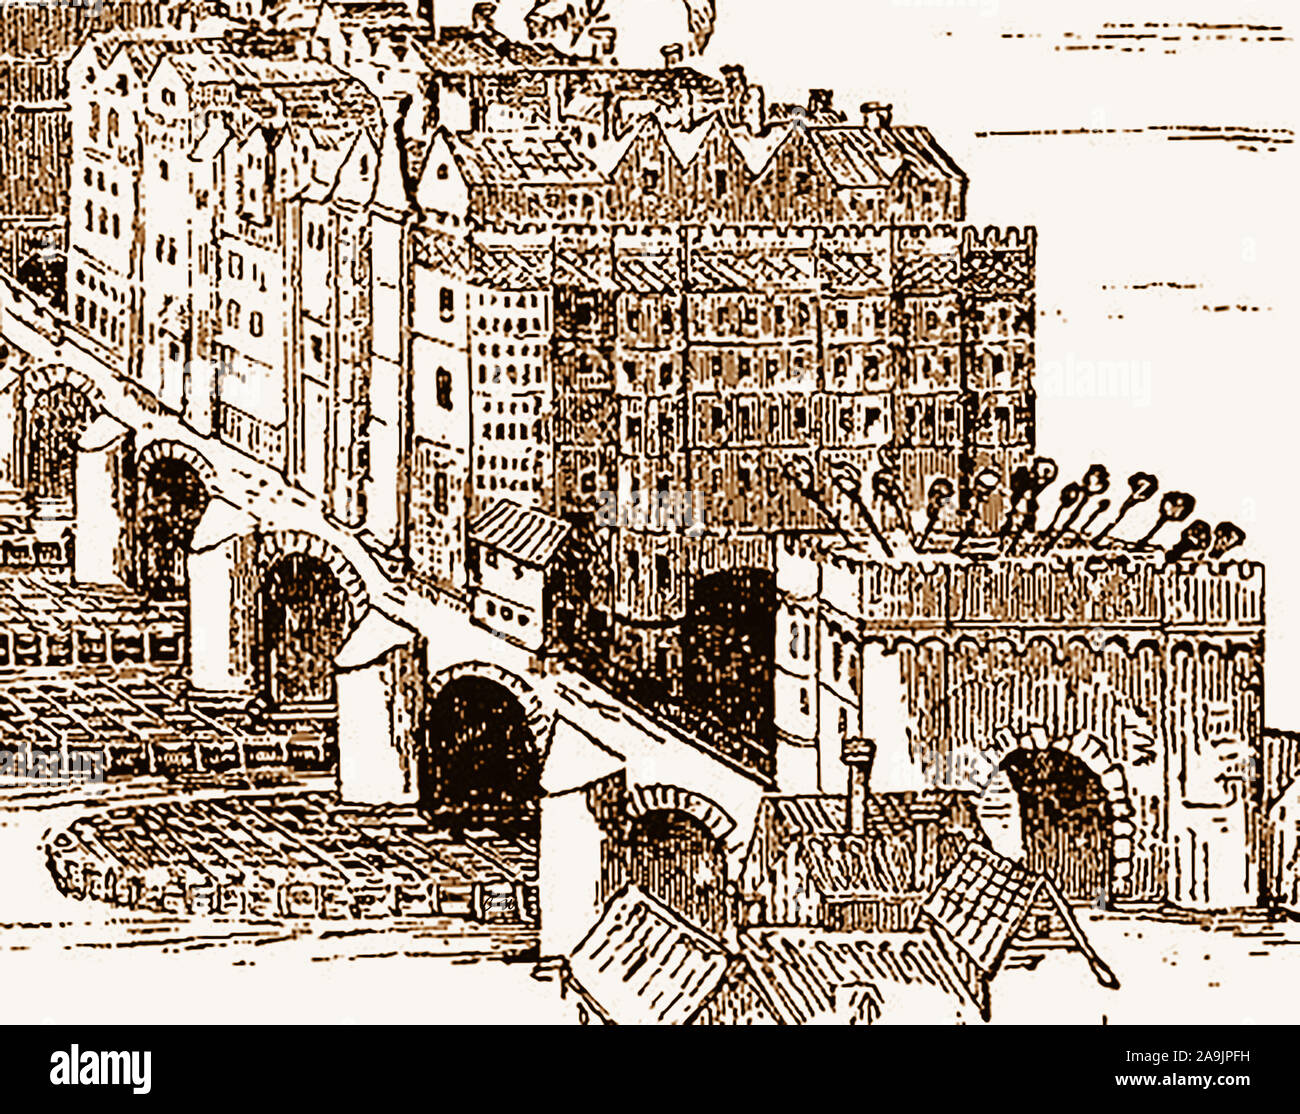 Una vista storica del vecchio ponte di Londra (1209-1831), con i suoi edifici e le teste dei criminali e traditori, infilzato su pali sopra l'arco al suo ingresso. Foto Stock